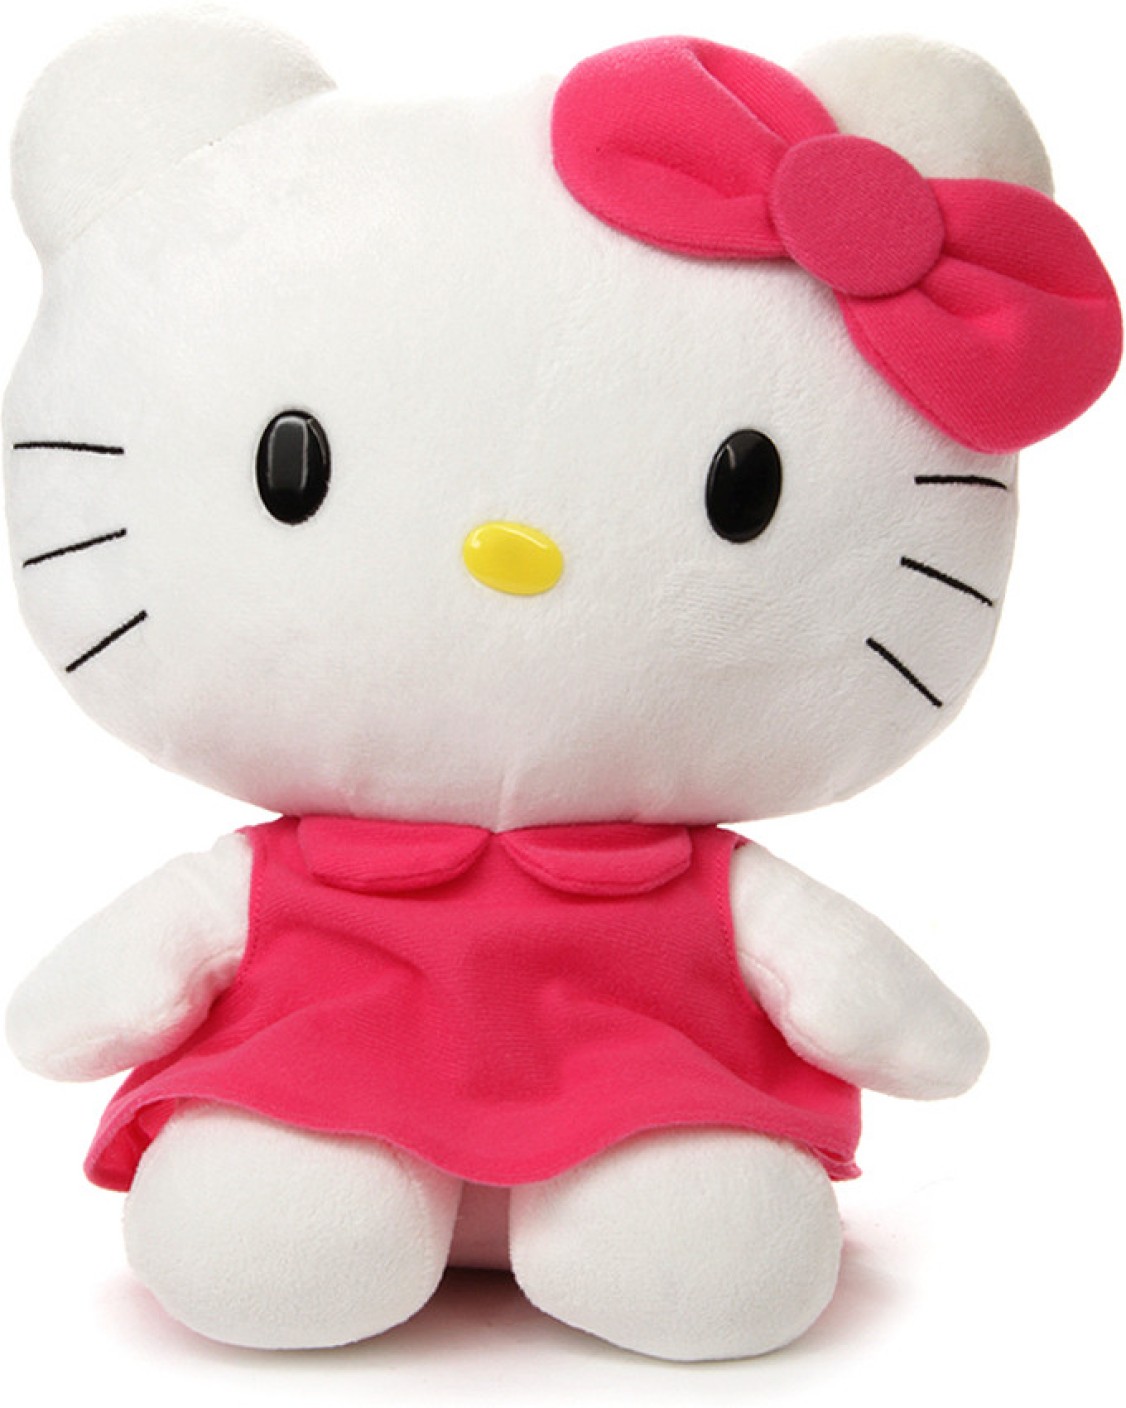  Hello  Kitty  Plush 12 inch Plush Buy Hello  Kitty  toys 